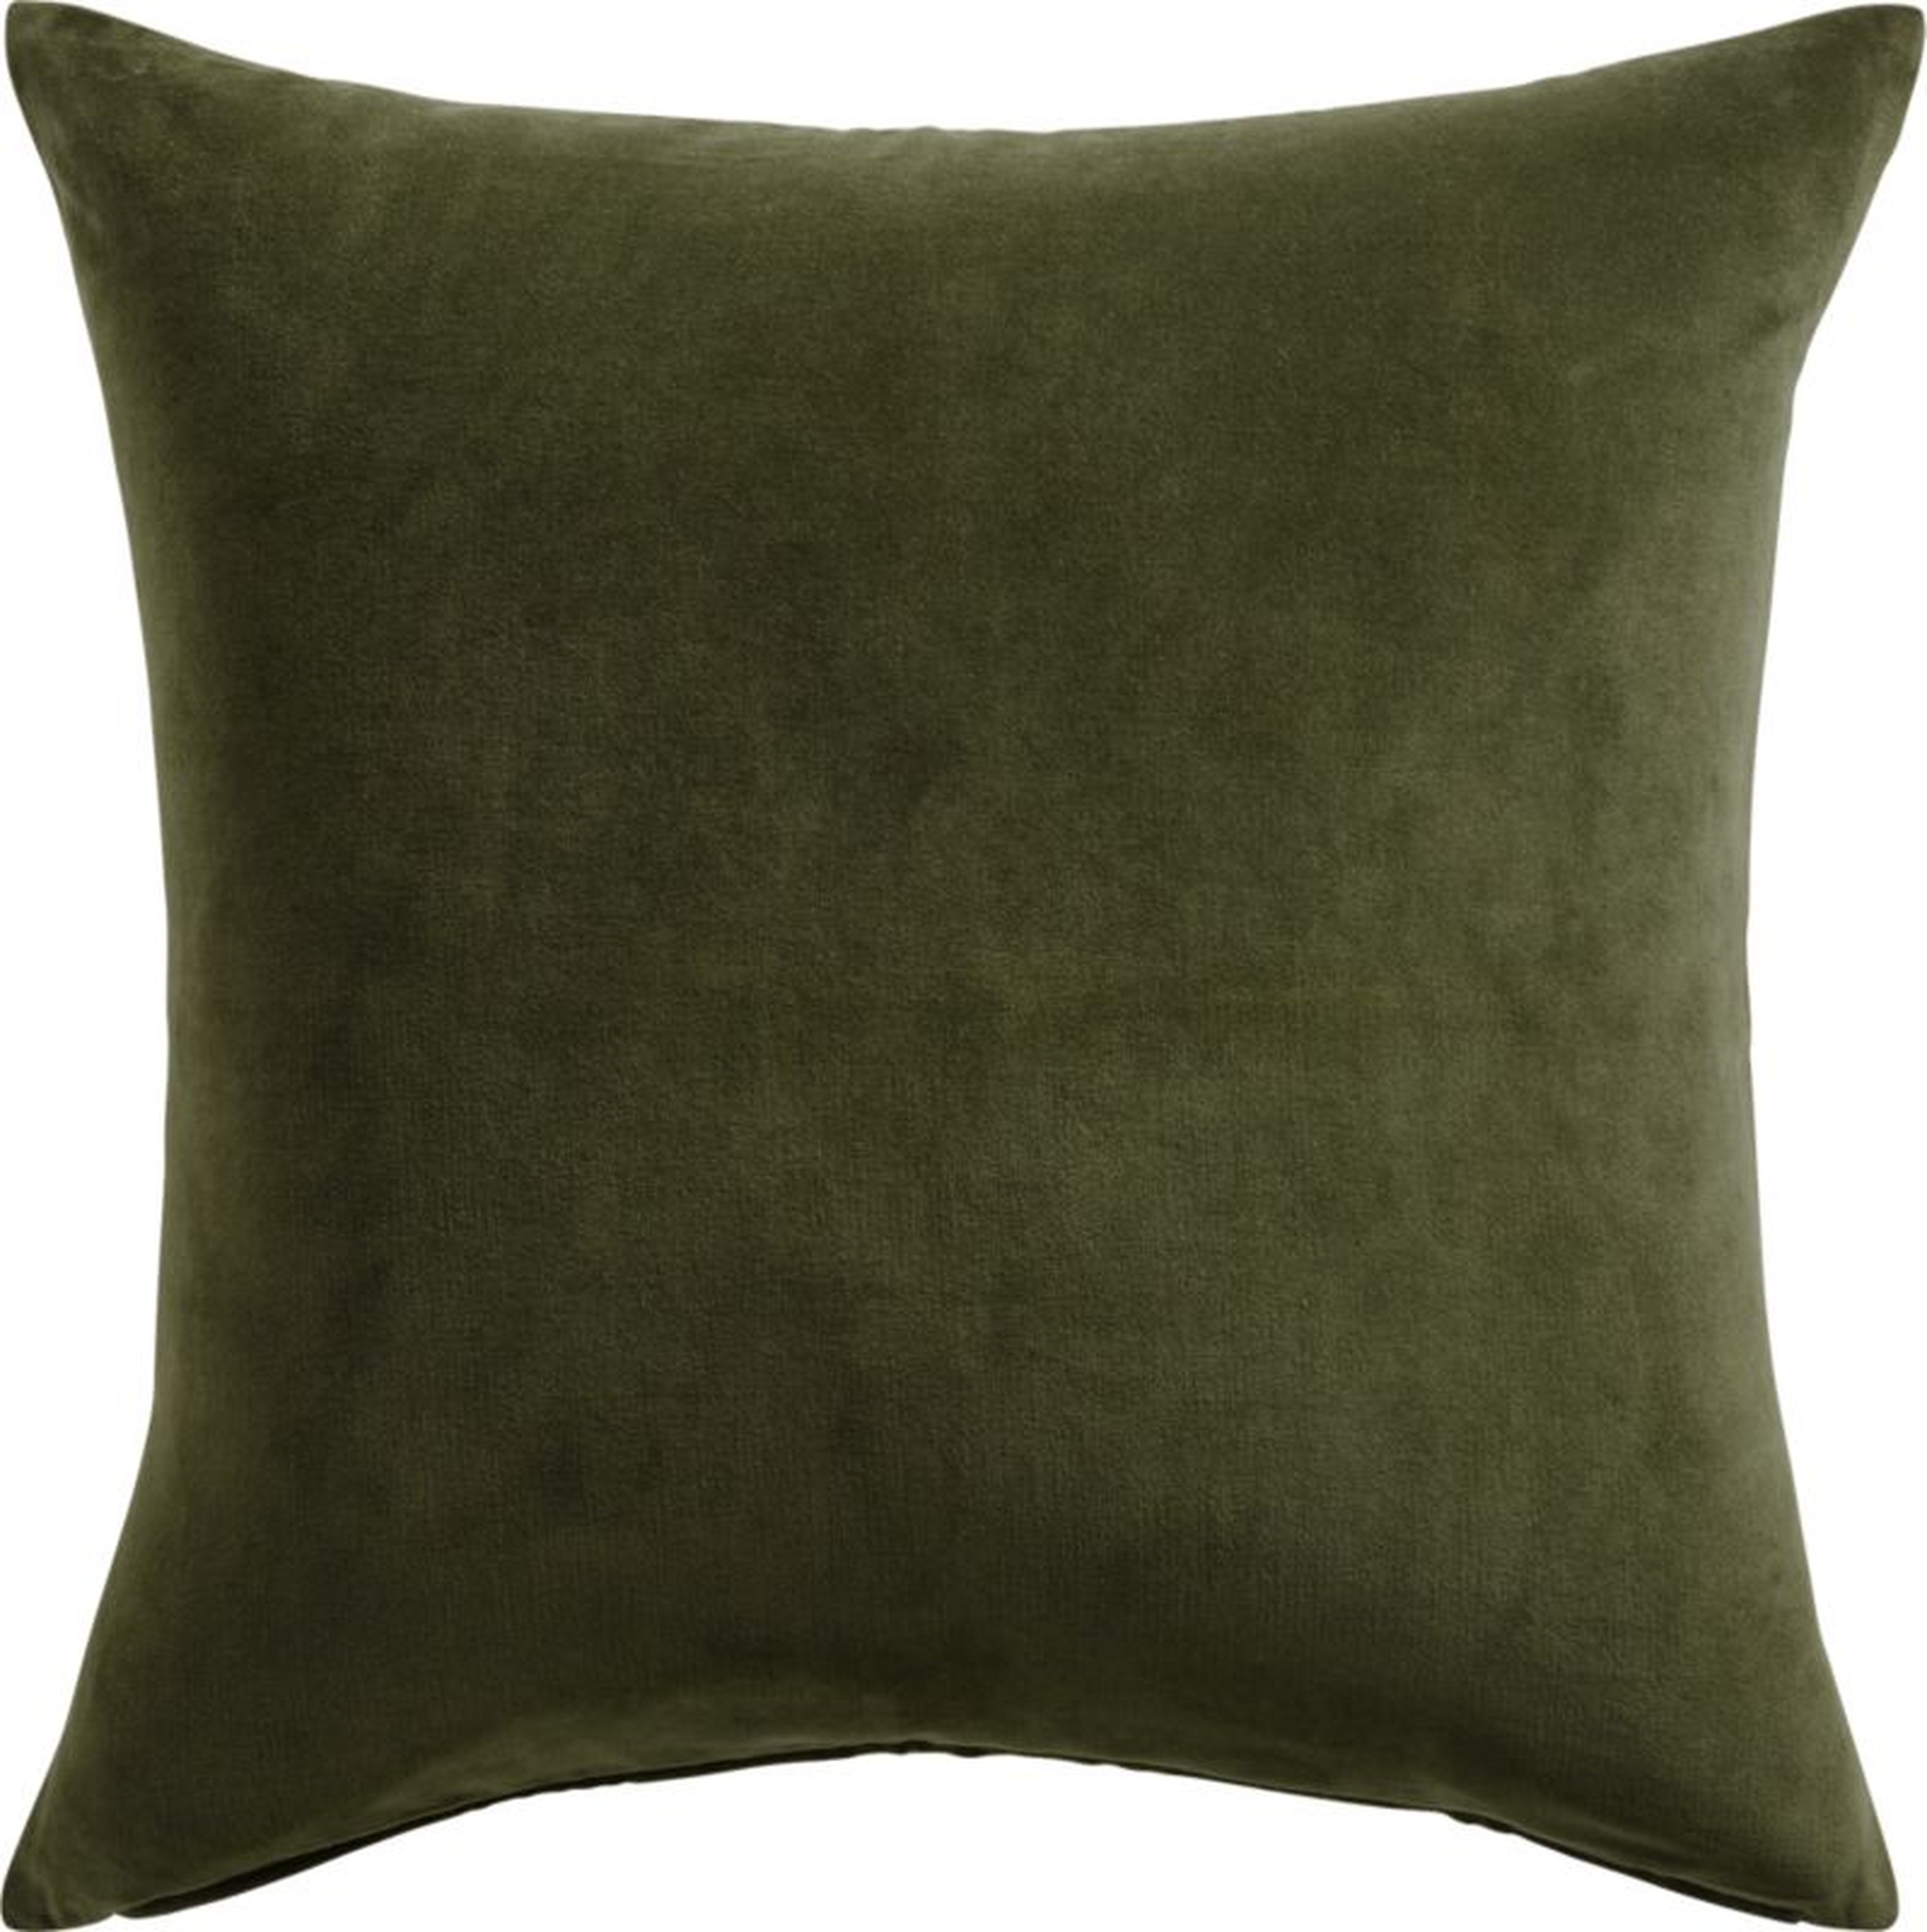 Leisure Olive Green Velvet Throw Pillow with Down-Alternative Insert 23" - CB2